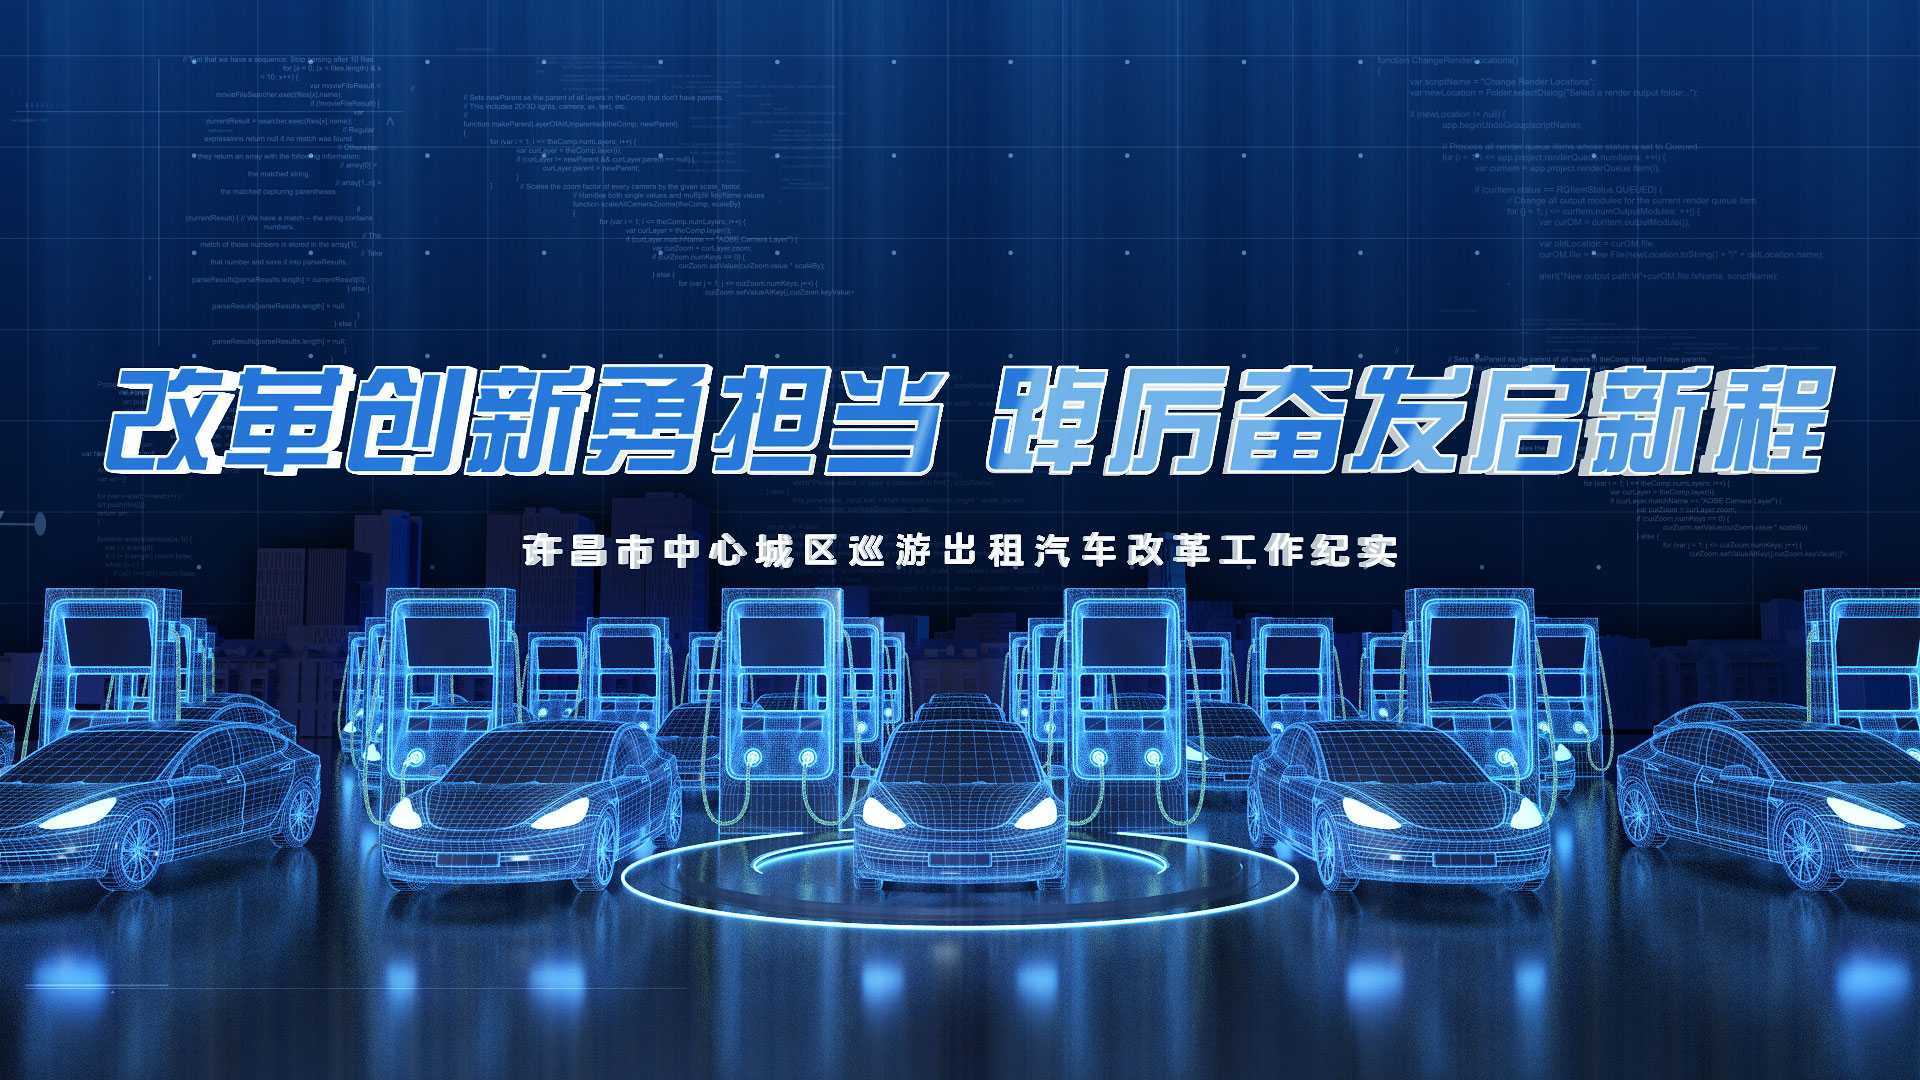 许昌市出租汽车改革专题片-改革创新勇担当 踔厉奋发启新程